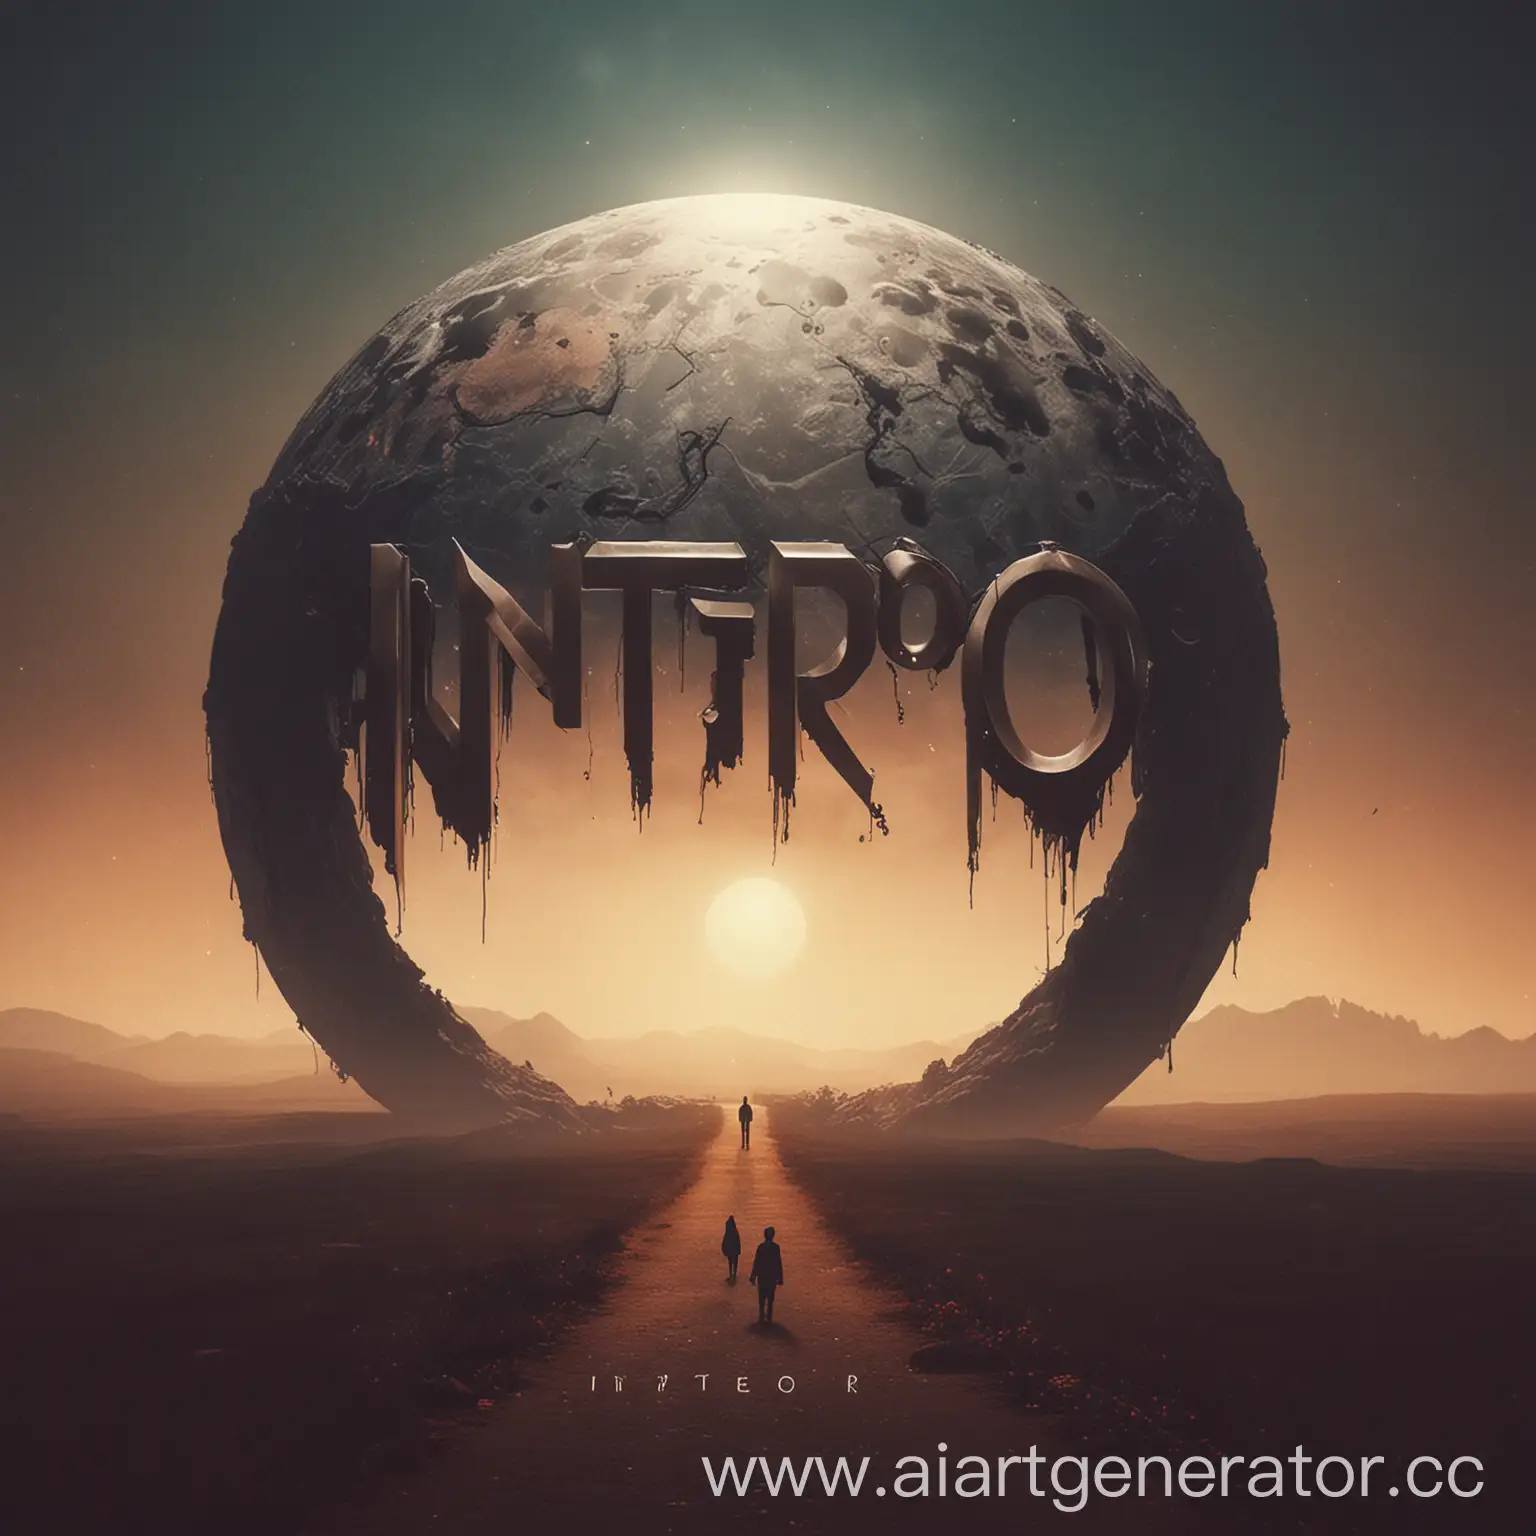 Обложка для альбома трека под названием "Интро"